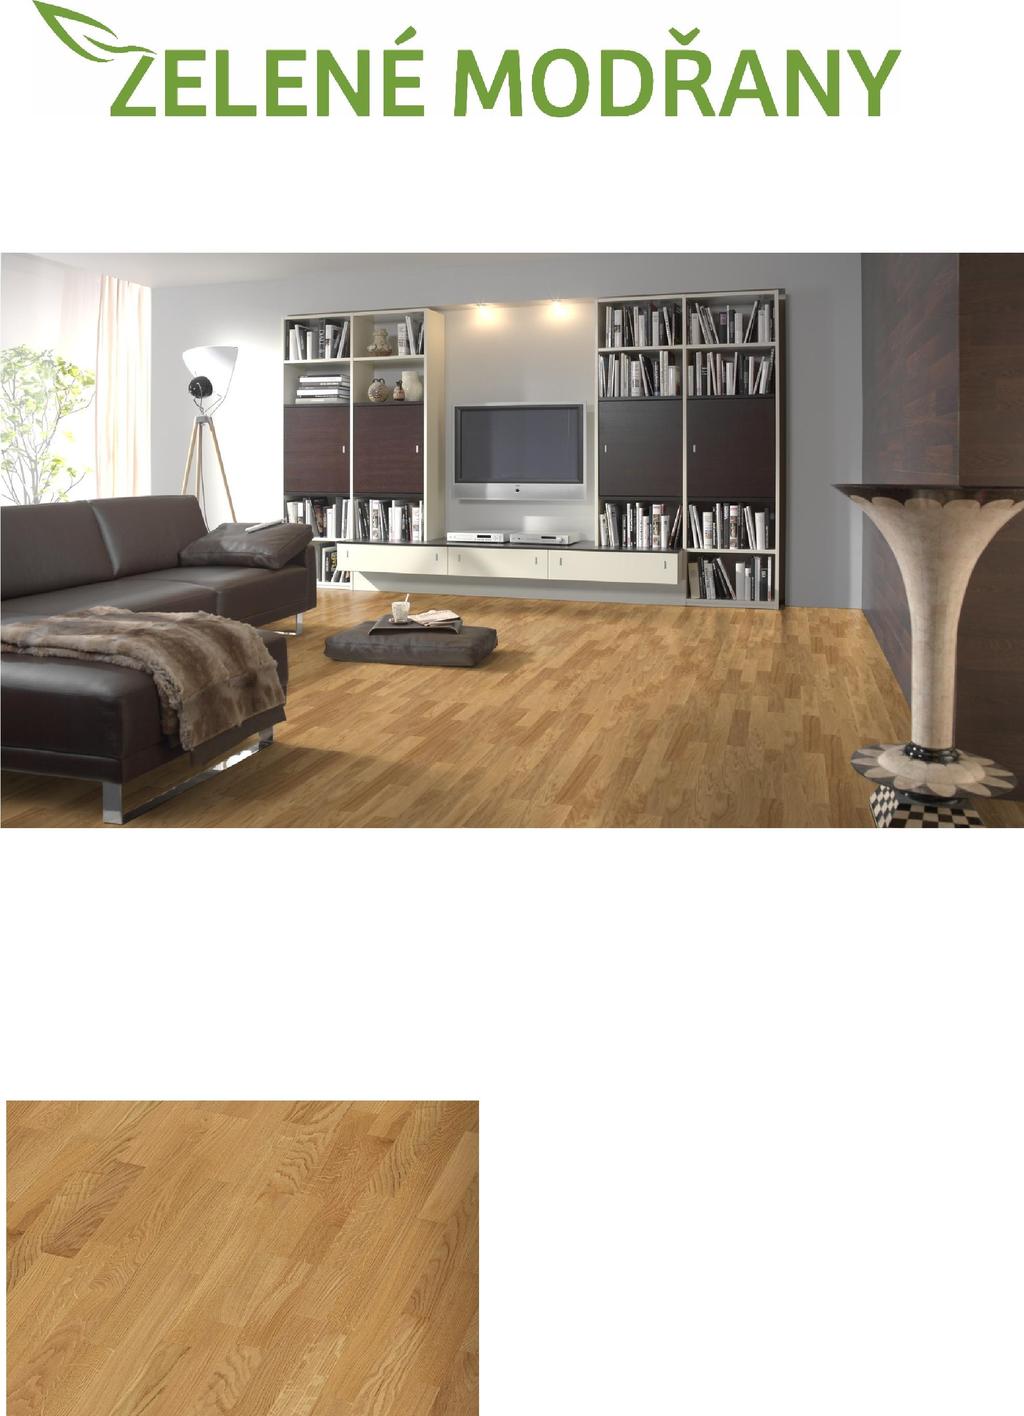 PODLAHOVÉ KRYTINY standardní vybavení Dvouvrstvá dřevěná podlaha DUB CLASSIC BTX Díky své skladbě je dvouvrstvá podlaha velmi stabilní.